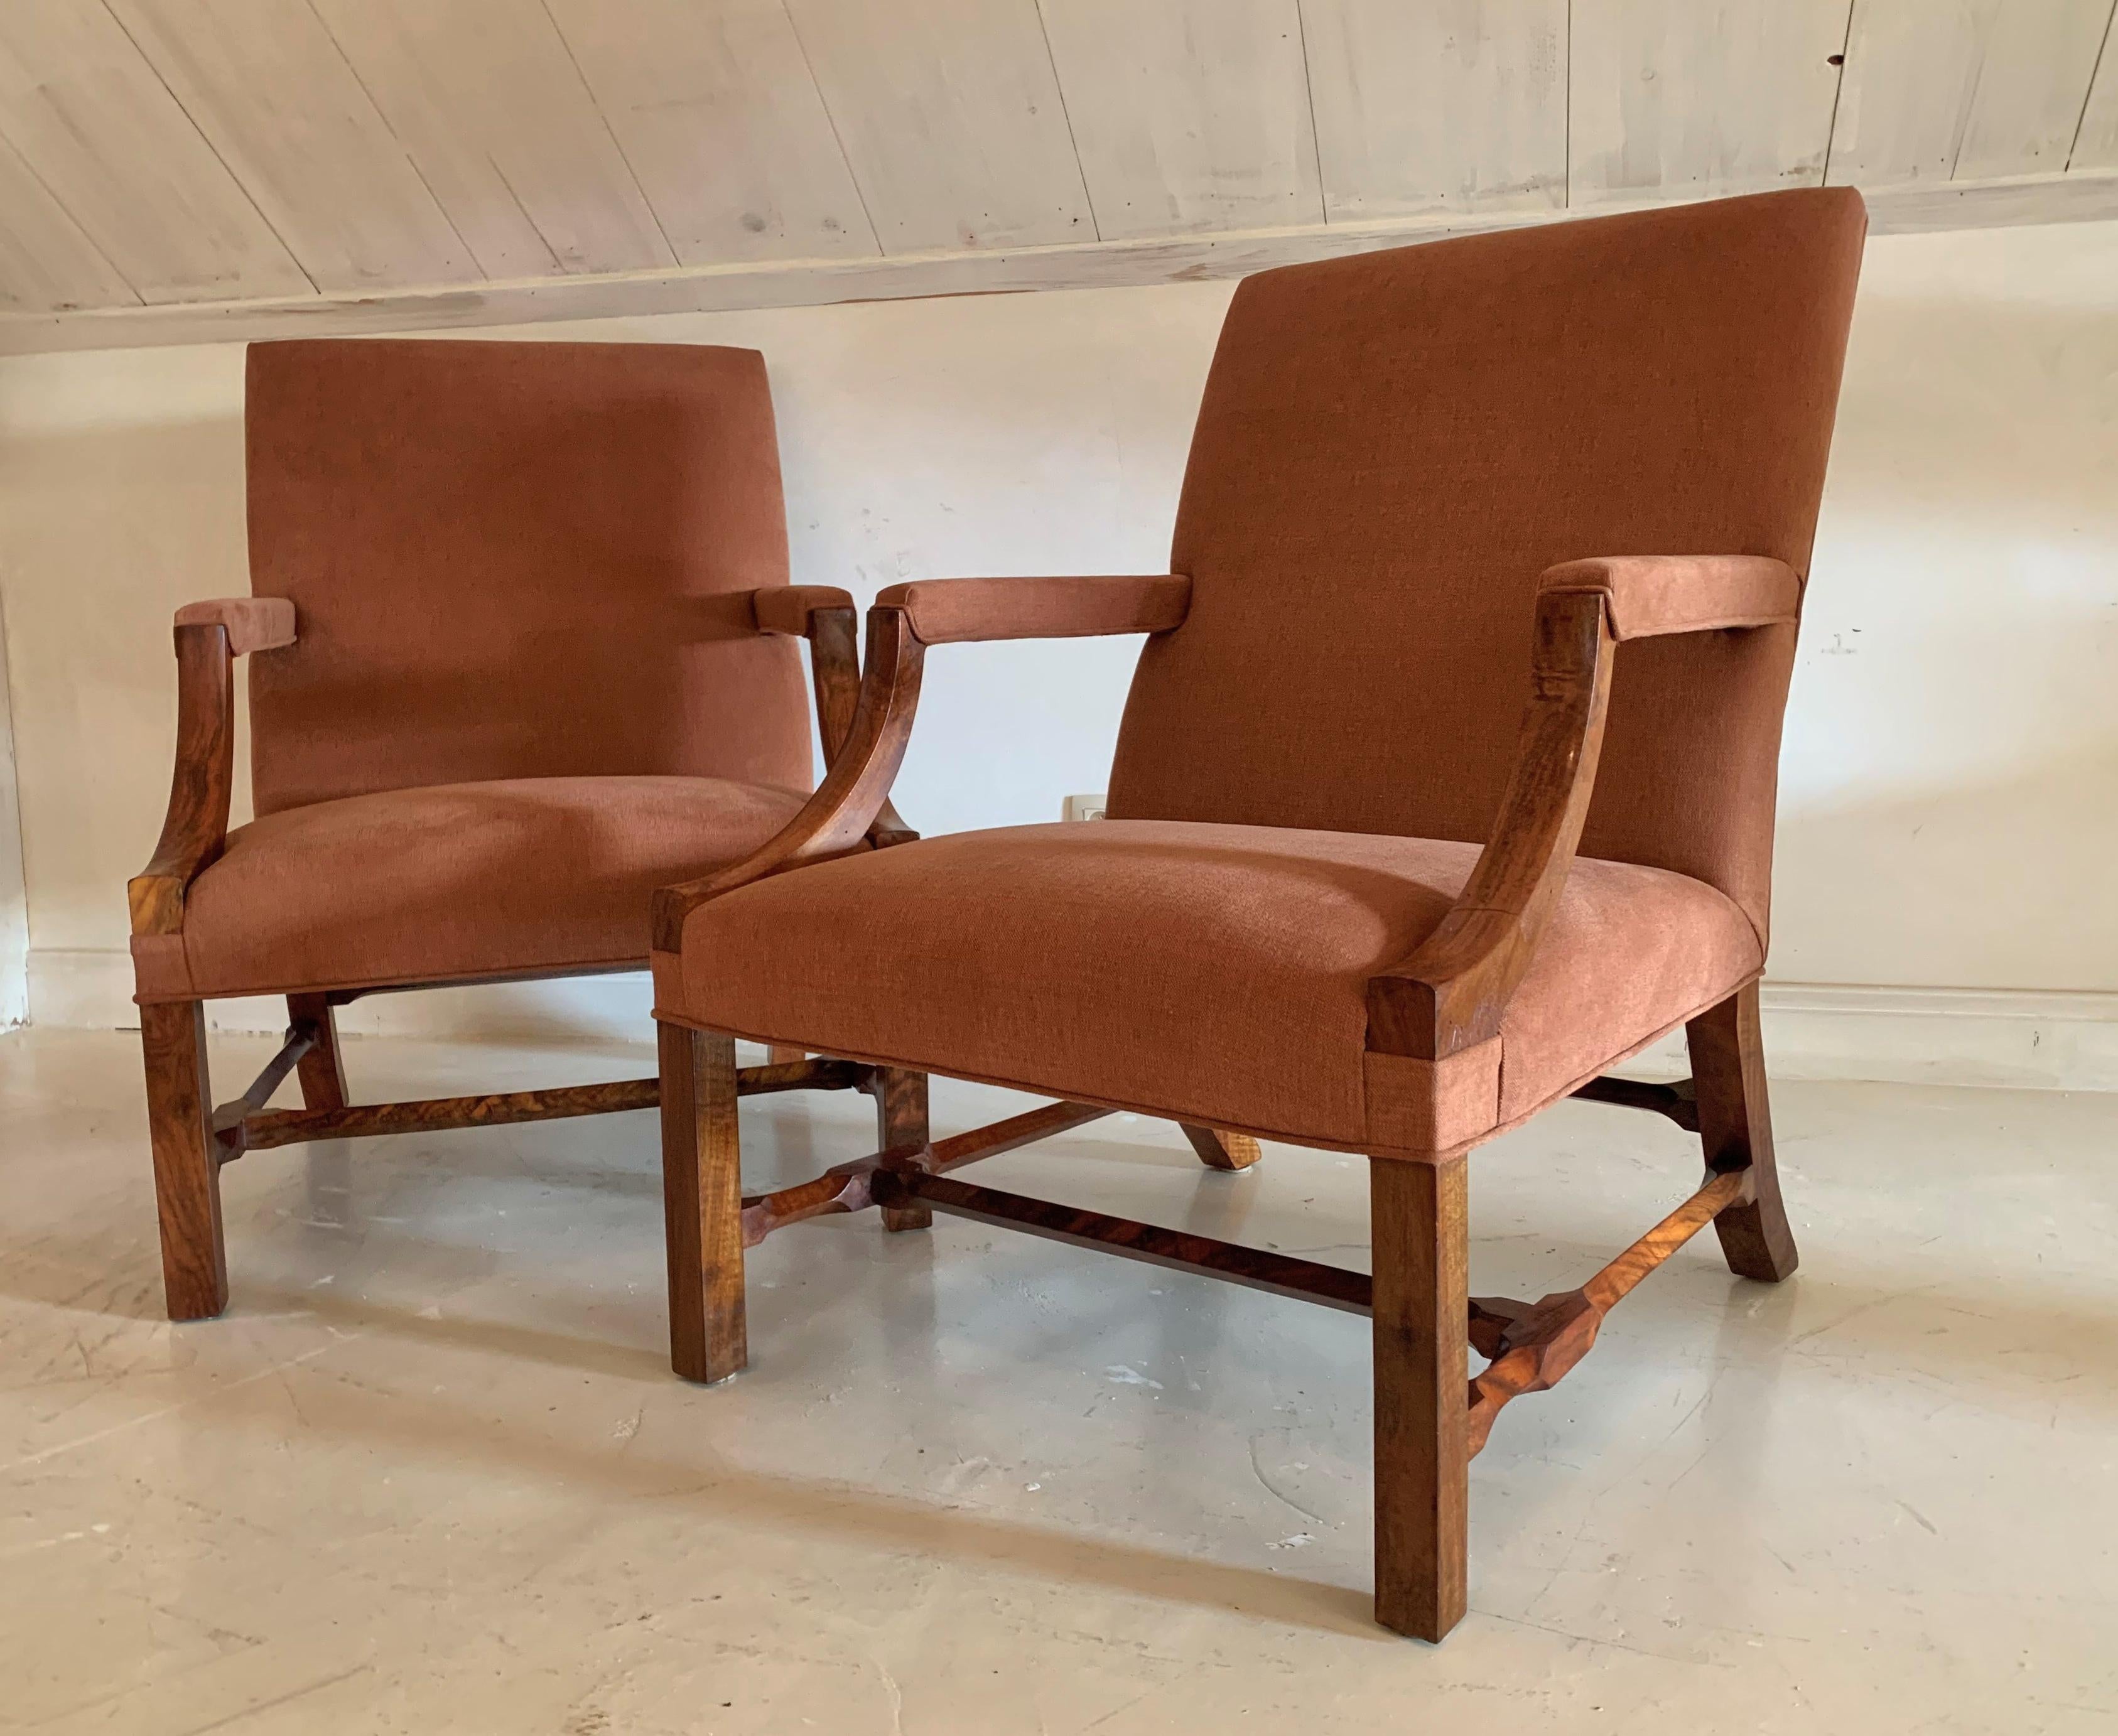 Da wir eine kleine, aber erstaunliche Menge an Wurzelholz gefunden haben, haben wir beschlossen, ein Paar Stühle für diese seltene Holzart anzufertigen. Unsere Wahl fiel auf ein klassisches, hochwertiges Sesselmodell im Gainsborough-Stil. Wir haben